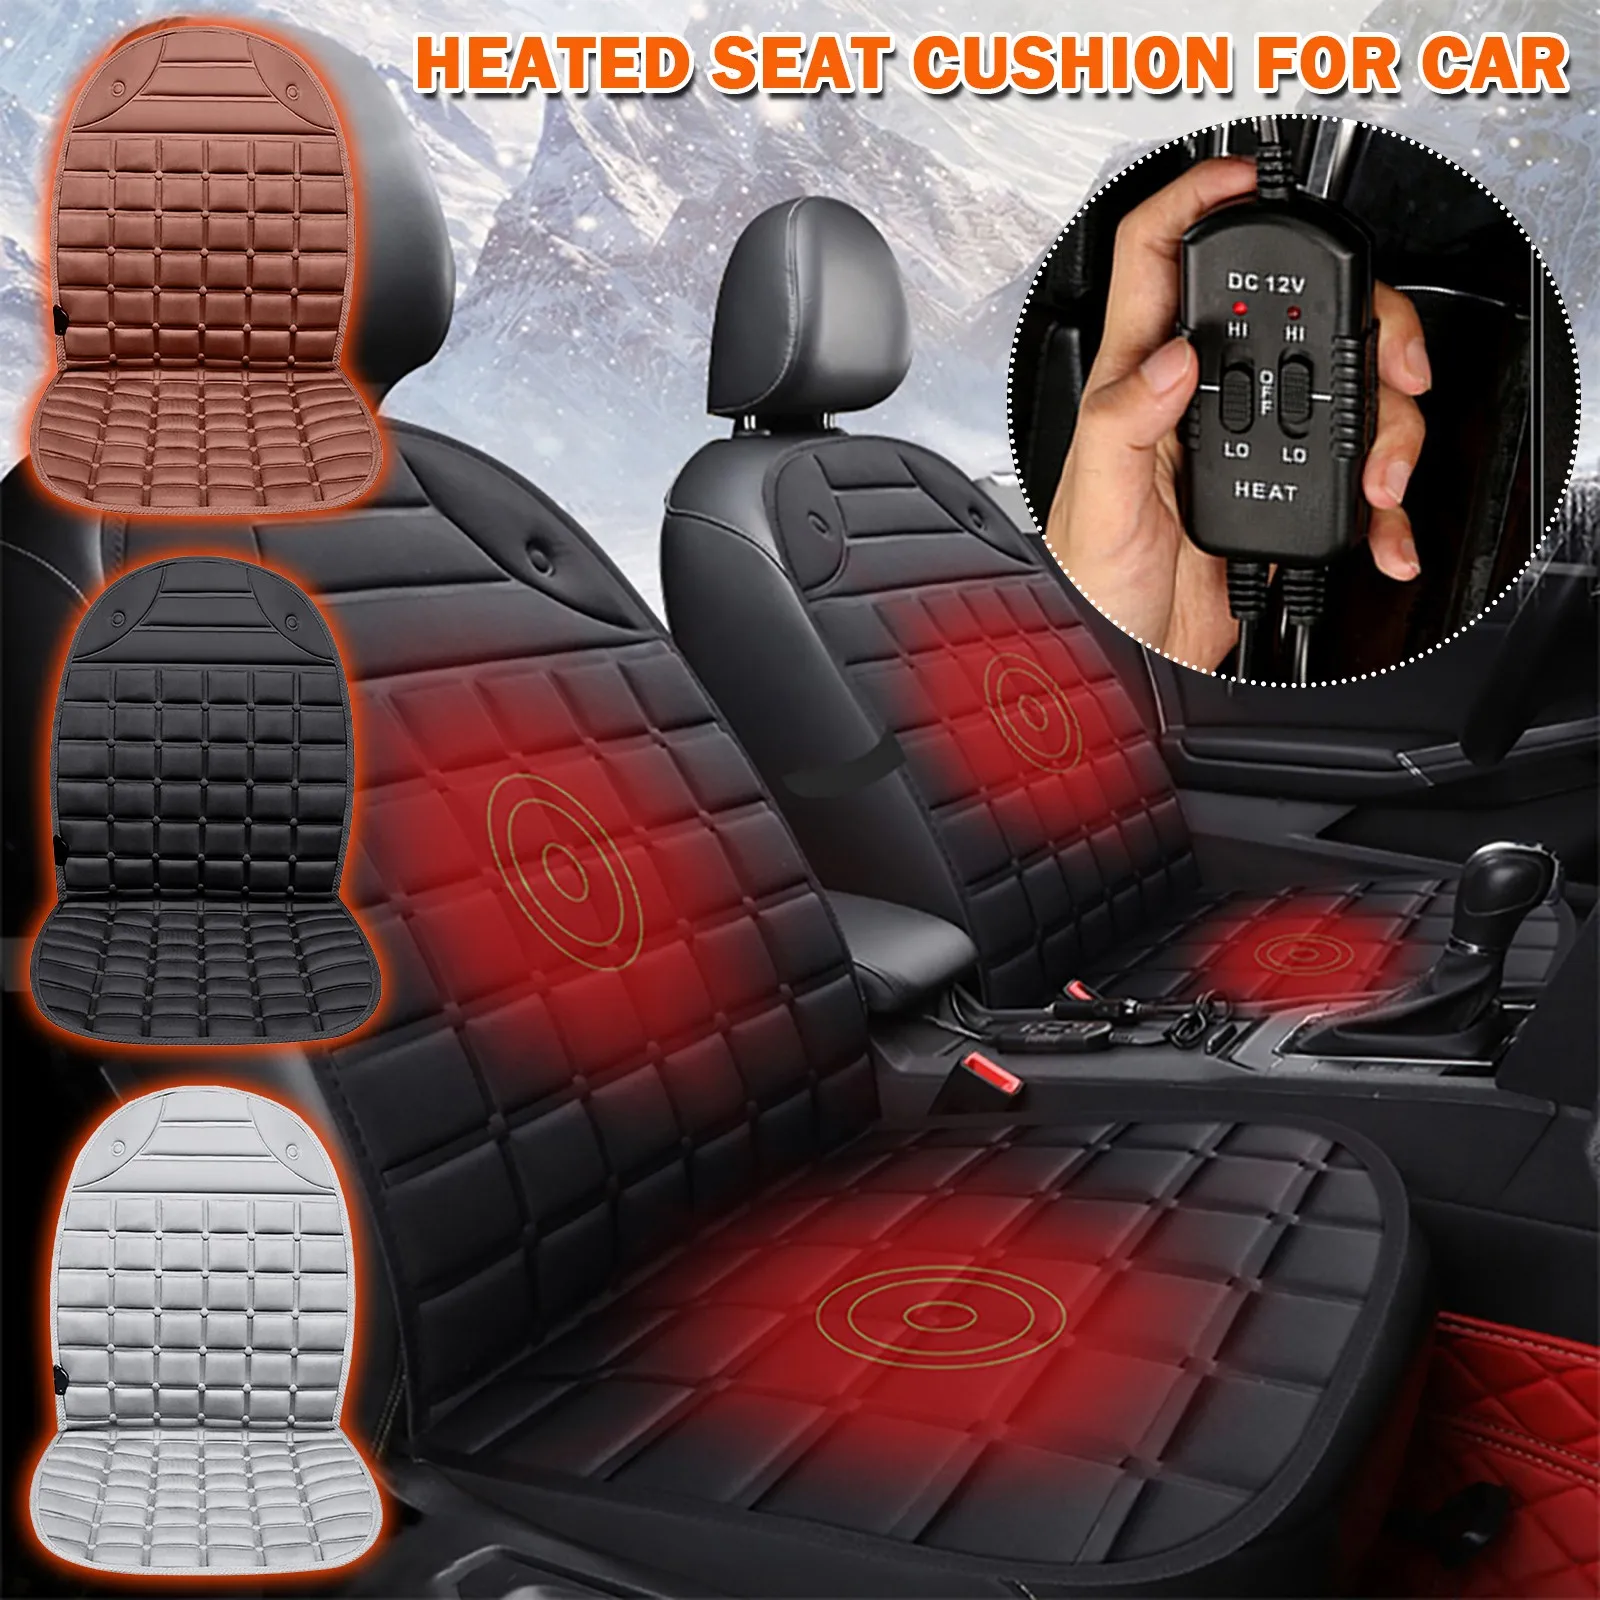 NEW 12V HEATING CUSHION SOFT COZY WARM WINTER CAR POWER SOCKET CONTROL SEAT 